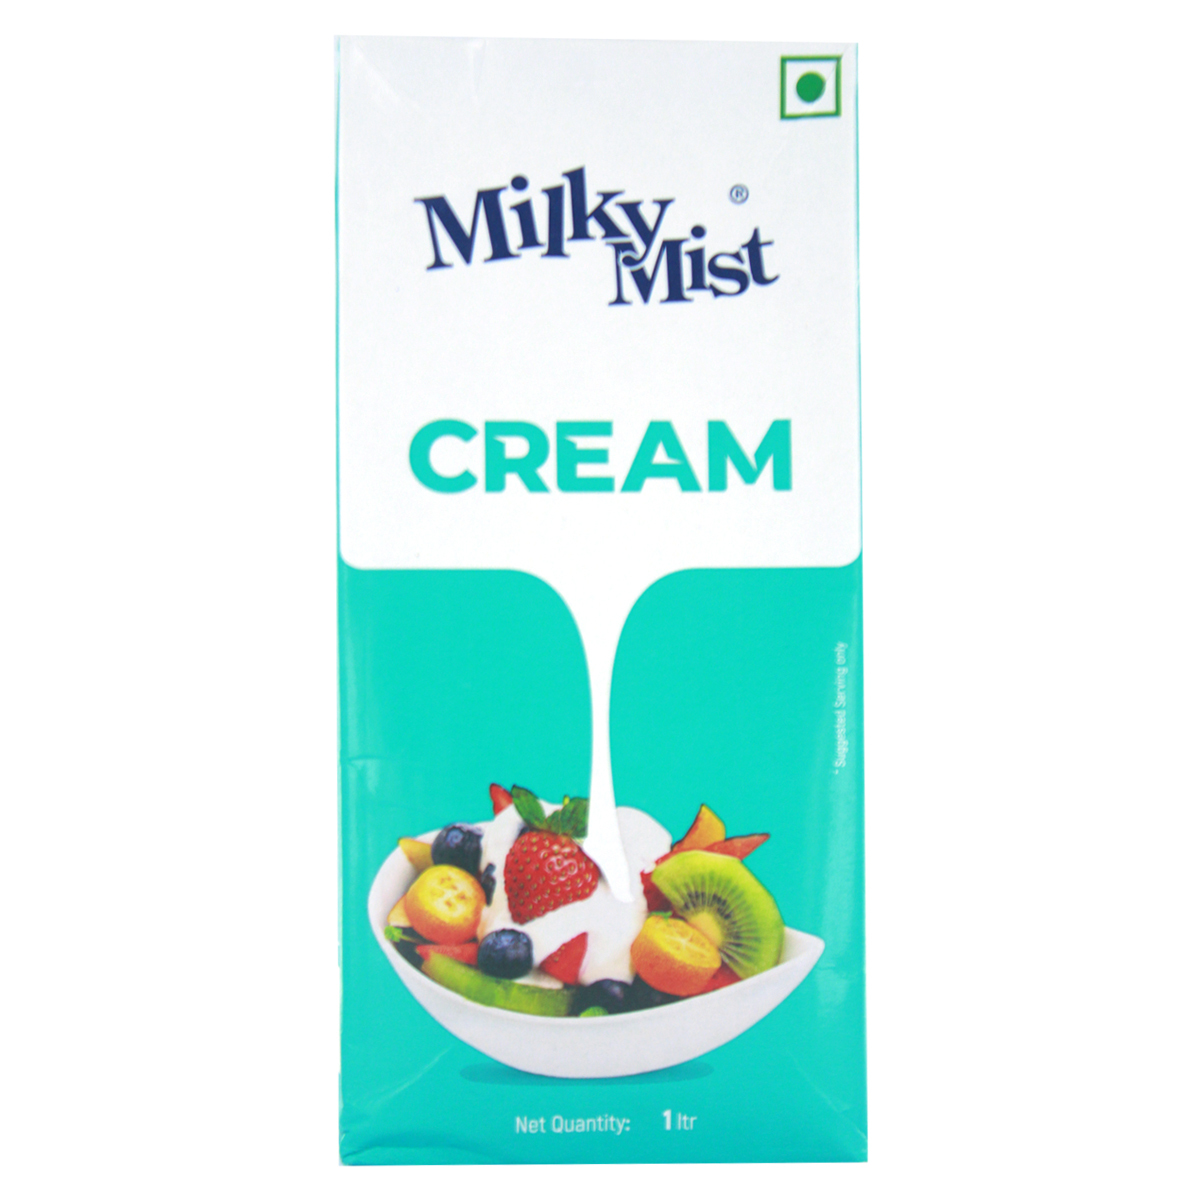 Milky Mist UHT Milk Cream 1 Litre